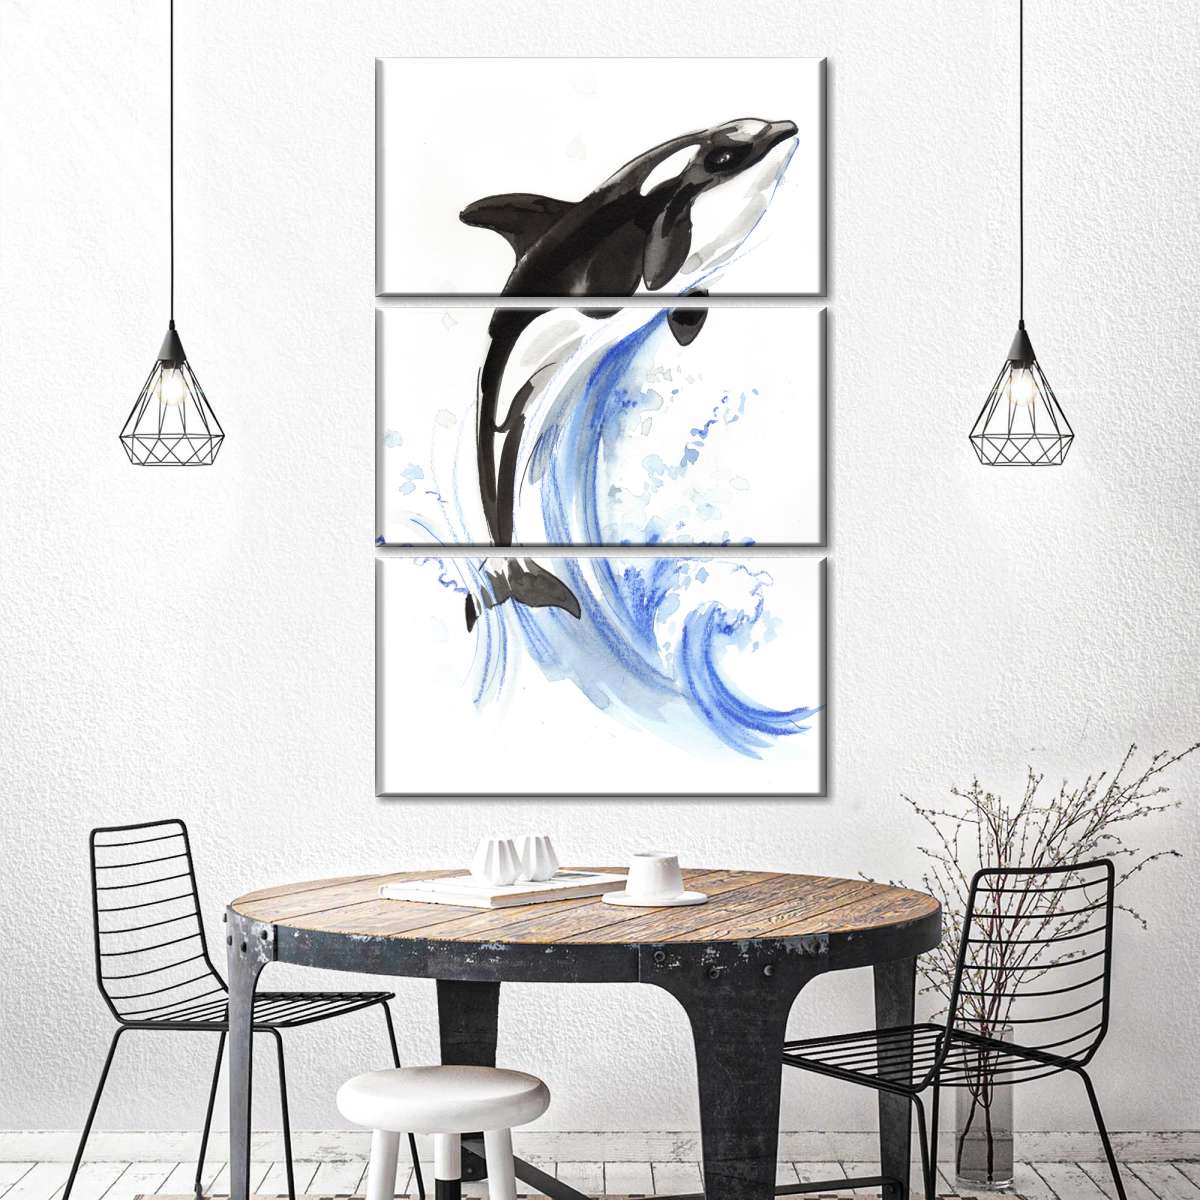 Bạn yêu thích cá voi và muốn đắm mình trong thế giới của chúng? Hãy đến với những hình vẽ cá voi đầy màu sắc và sống động nhất để thỏa mãn đam mê của bạn!